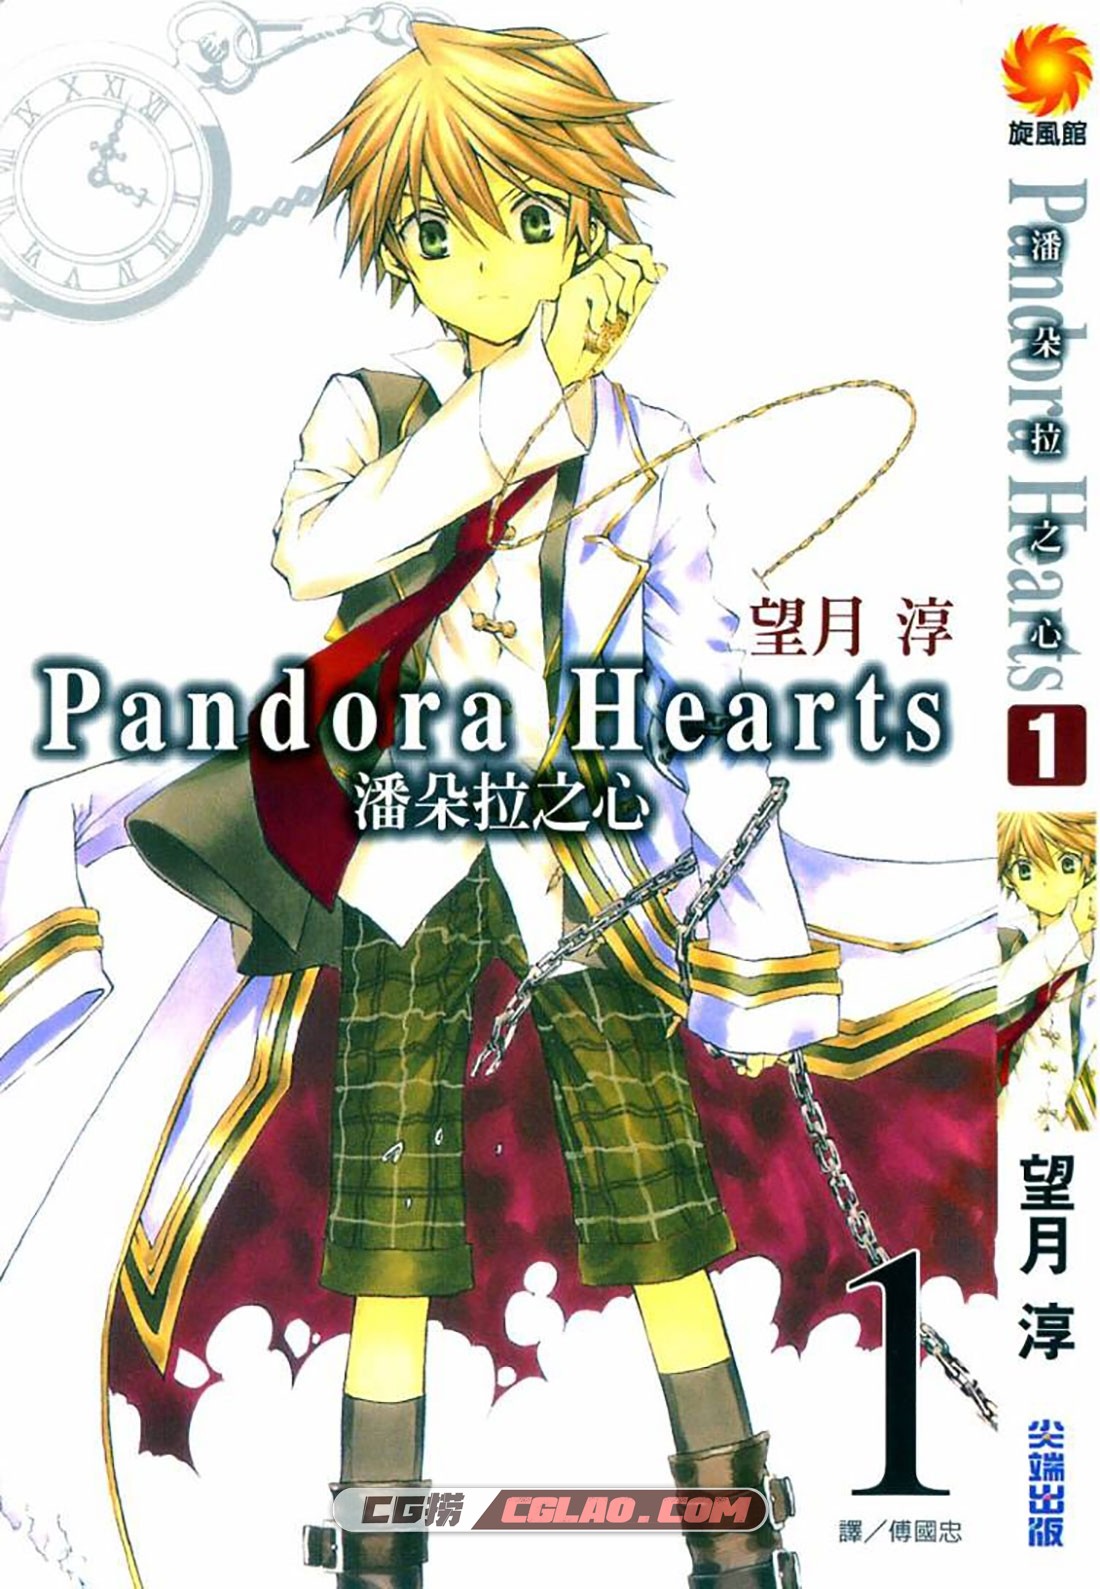 潘多拉之心 Pandora Hearts 望月淳 1-104话全集完结 附番外,1.jpg